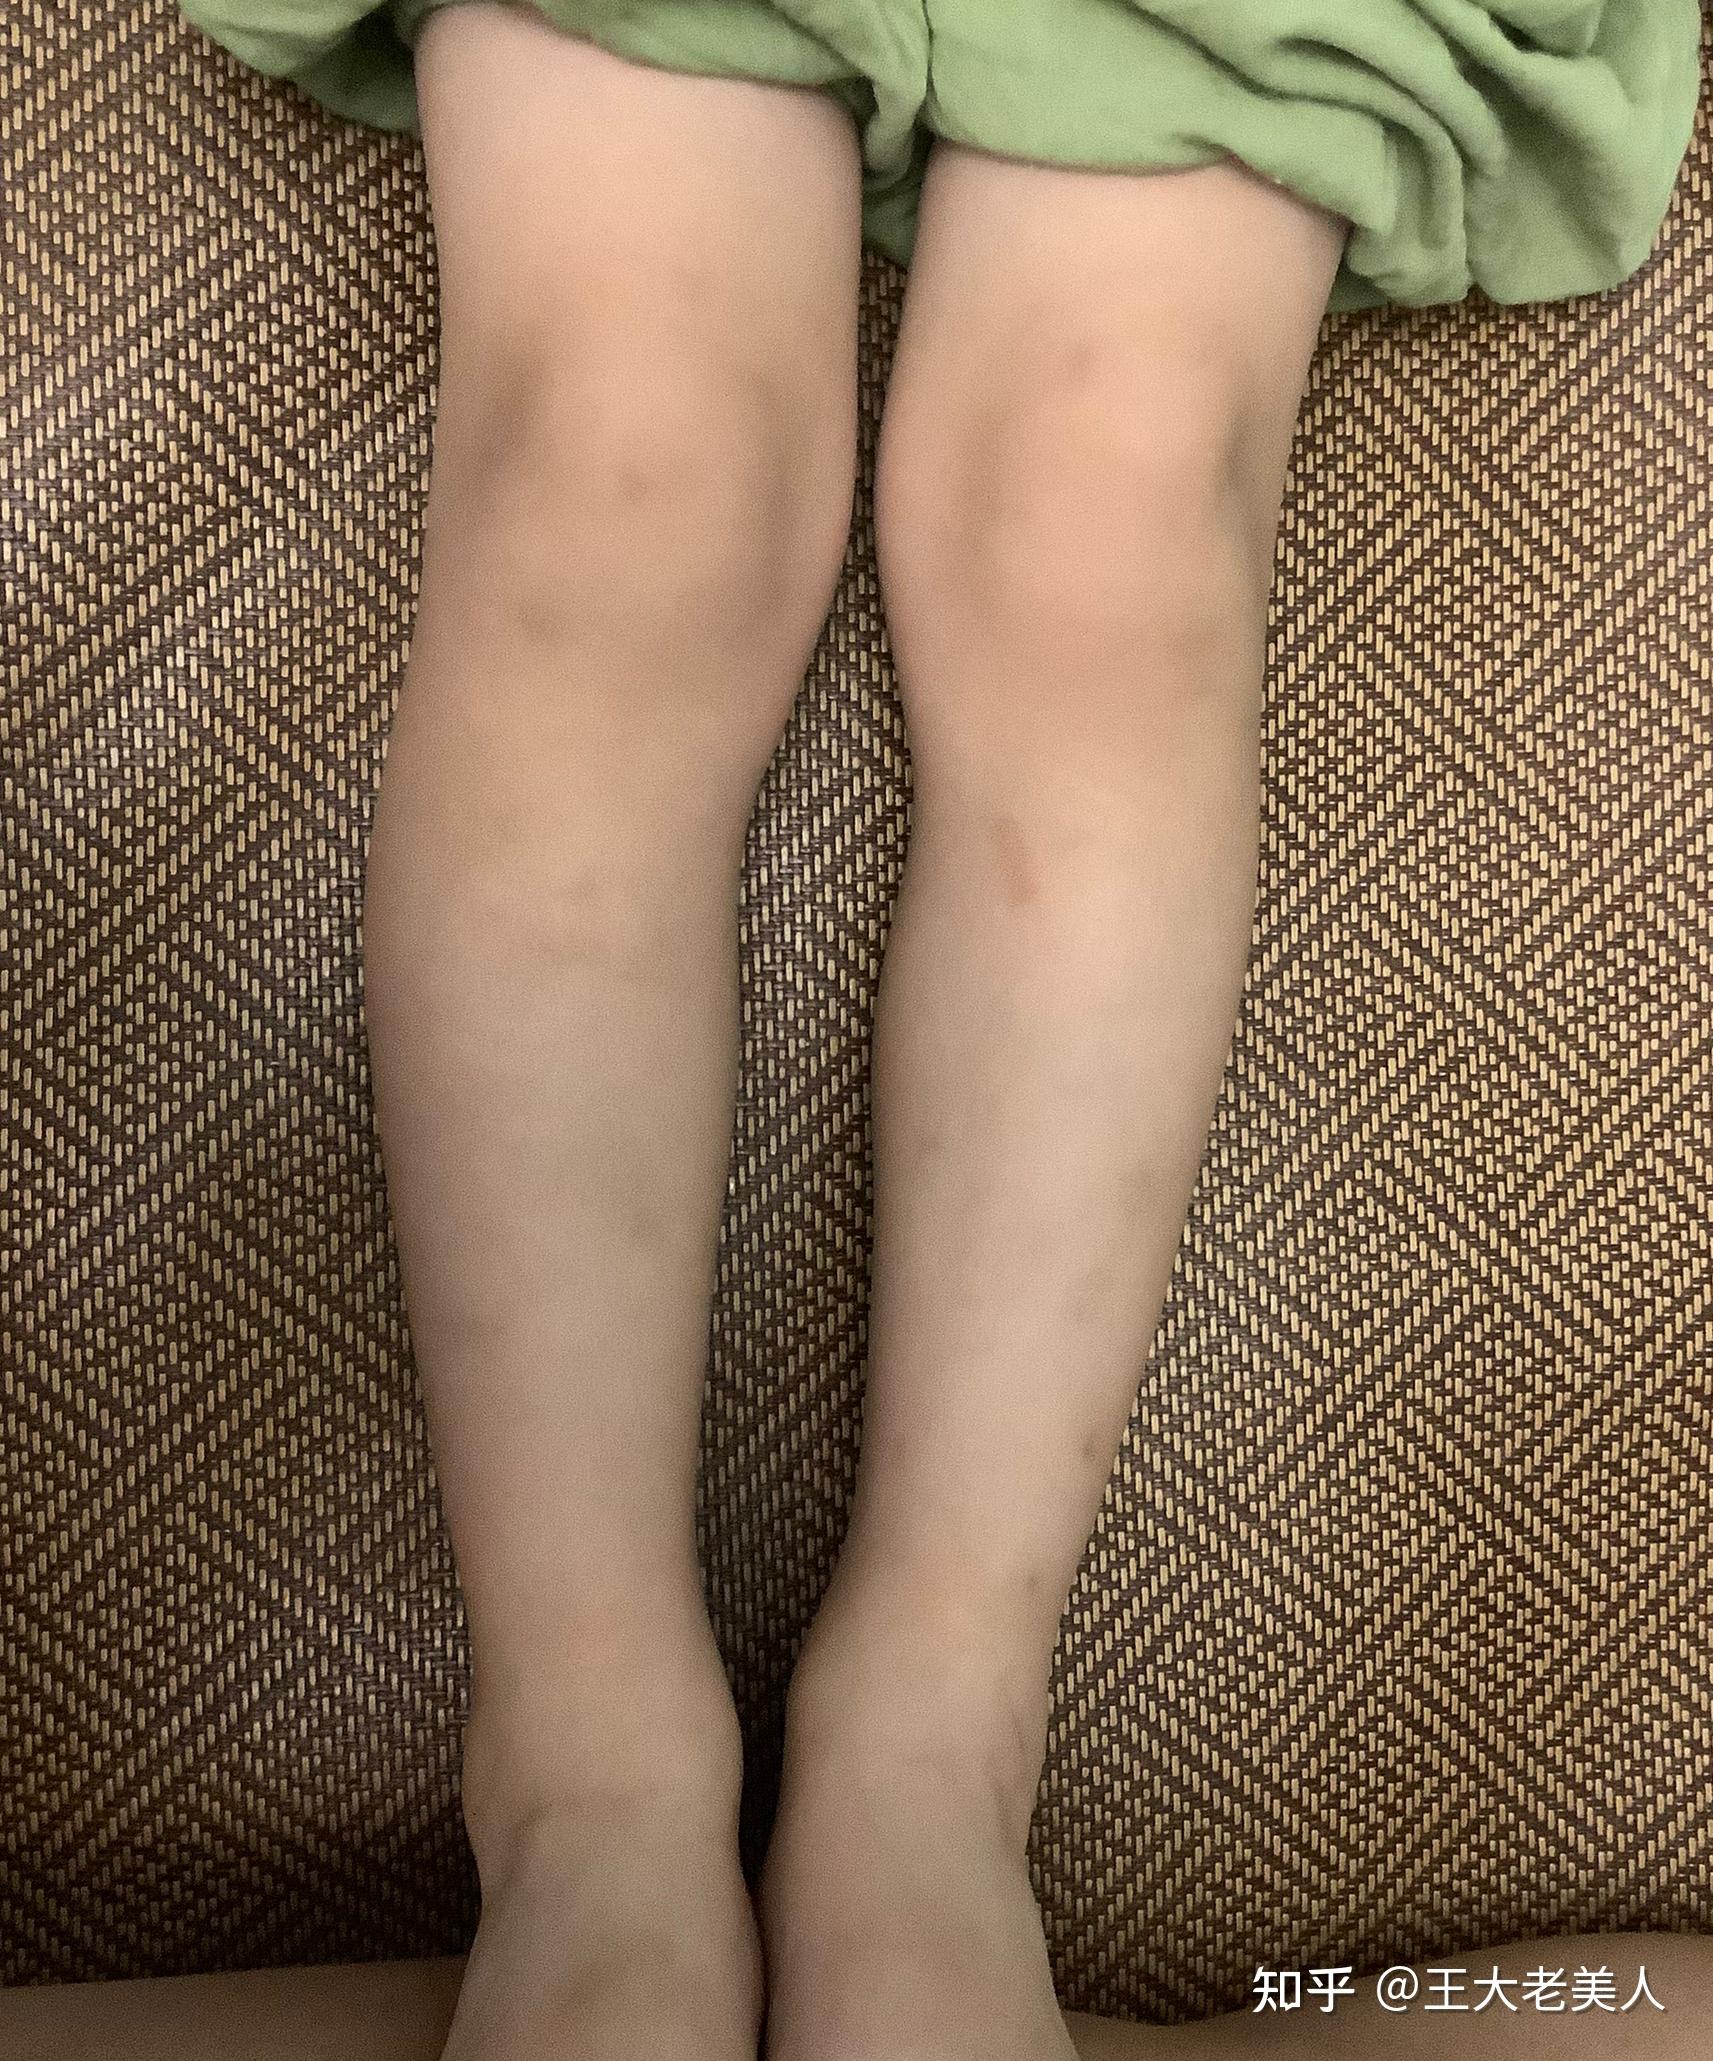 小孩腿弯不正常的图片图片